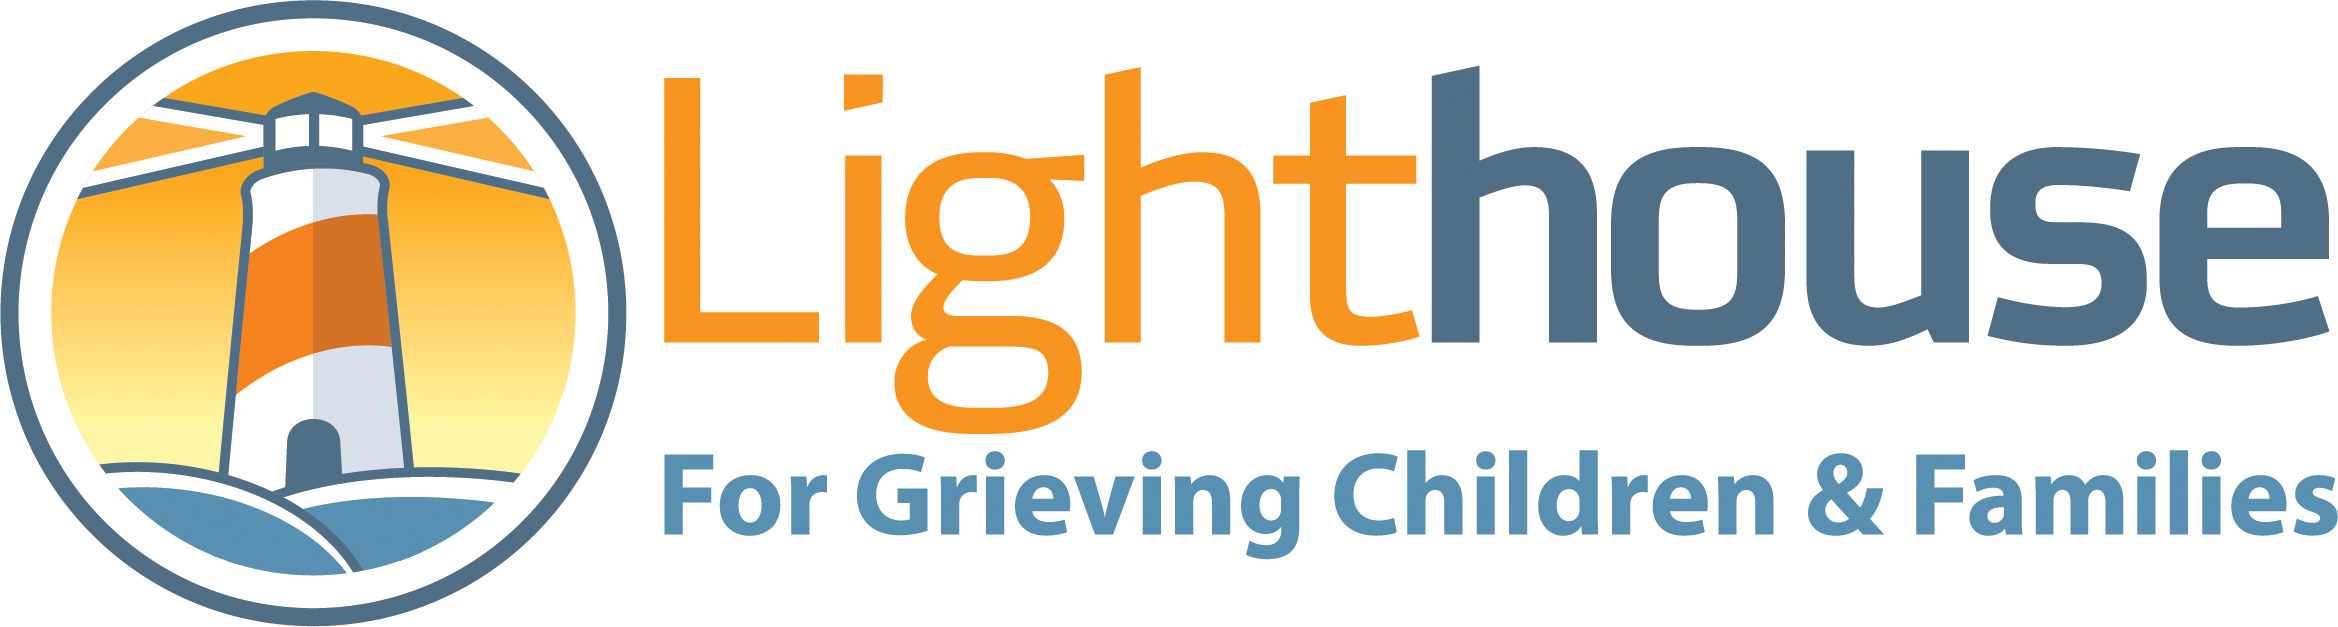 Lighthouse for Grieving Children logo